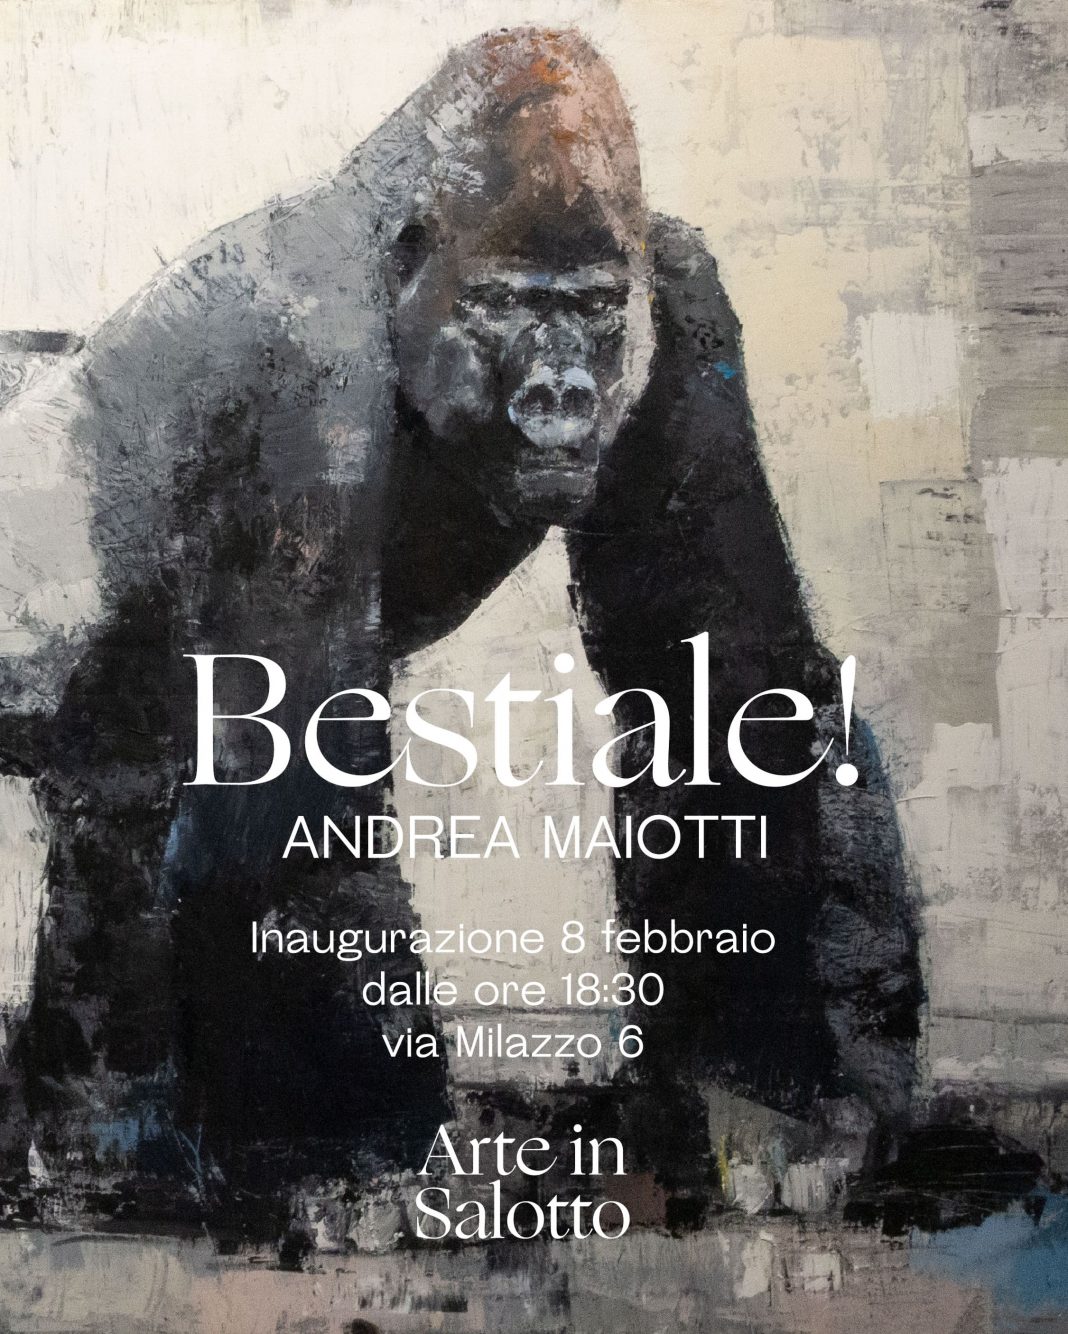 Bestiale!https://www.exibart.com/repository/media/formidable/11/img/de3/Bestiale-Arte-in-Salotto-1068x1334.jpg